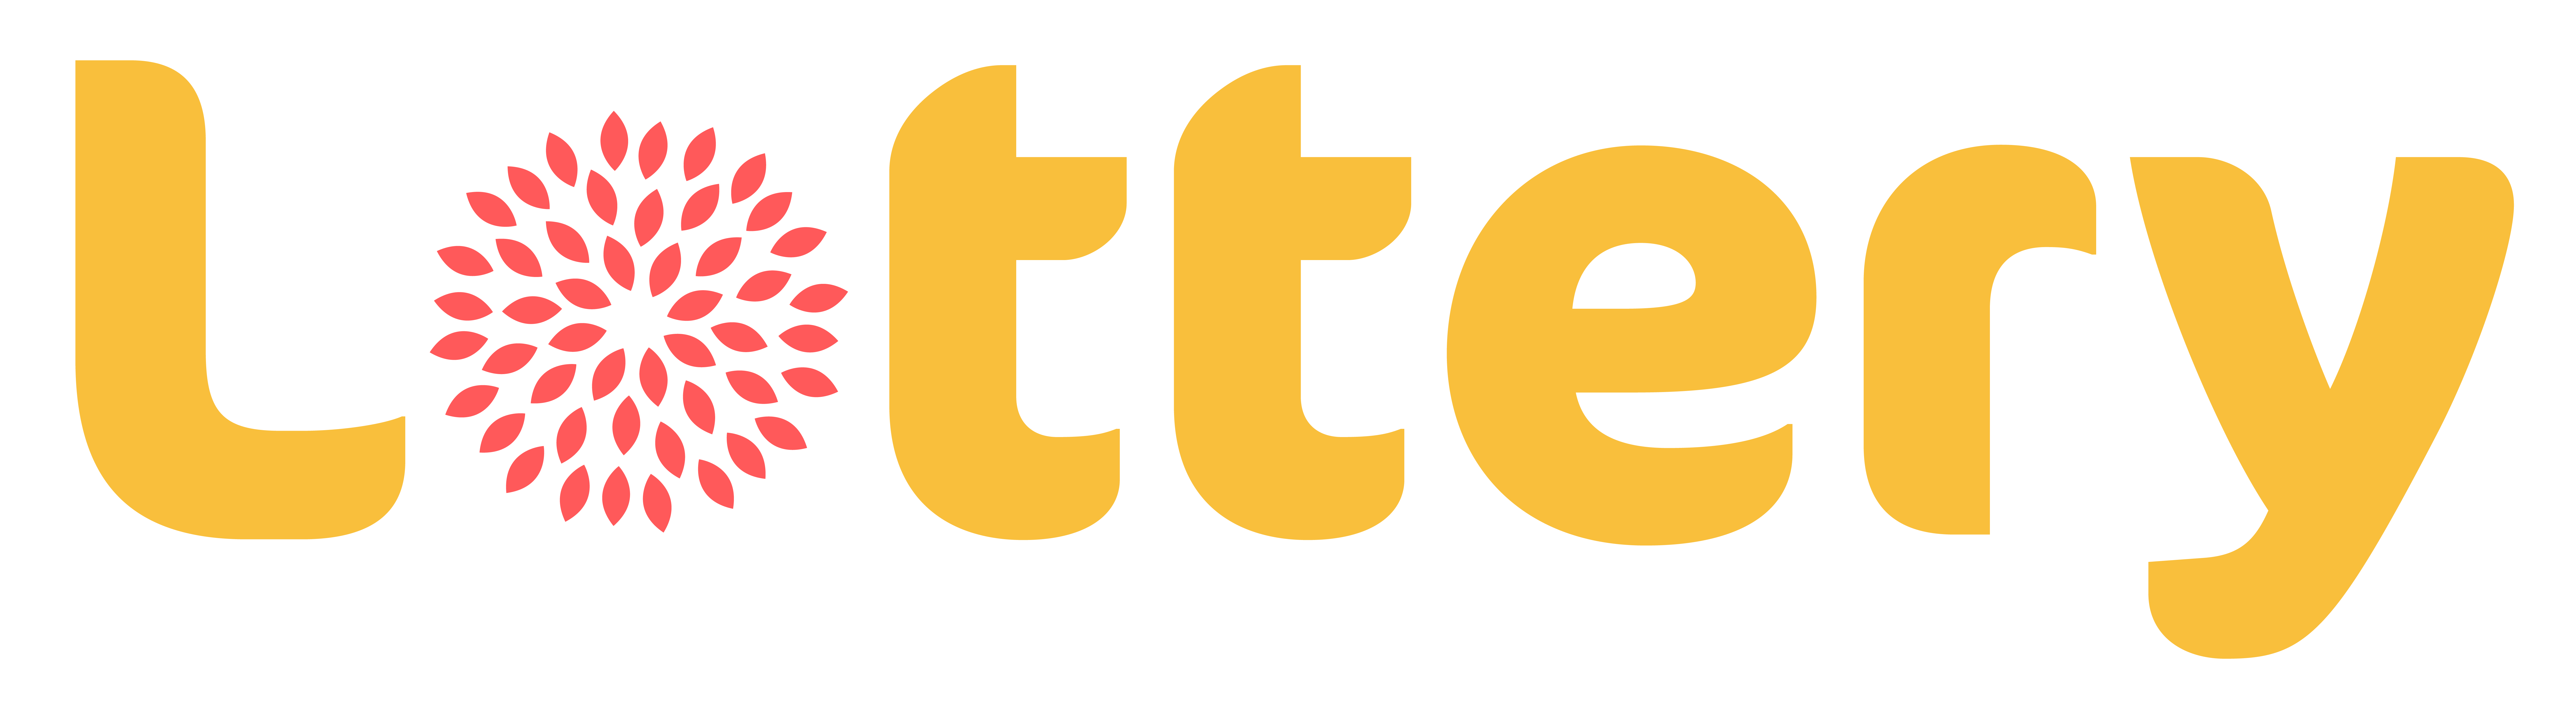 Treetops Lottery logo